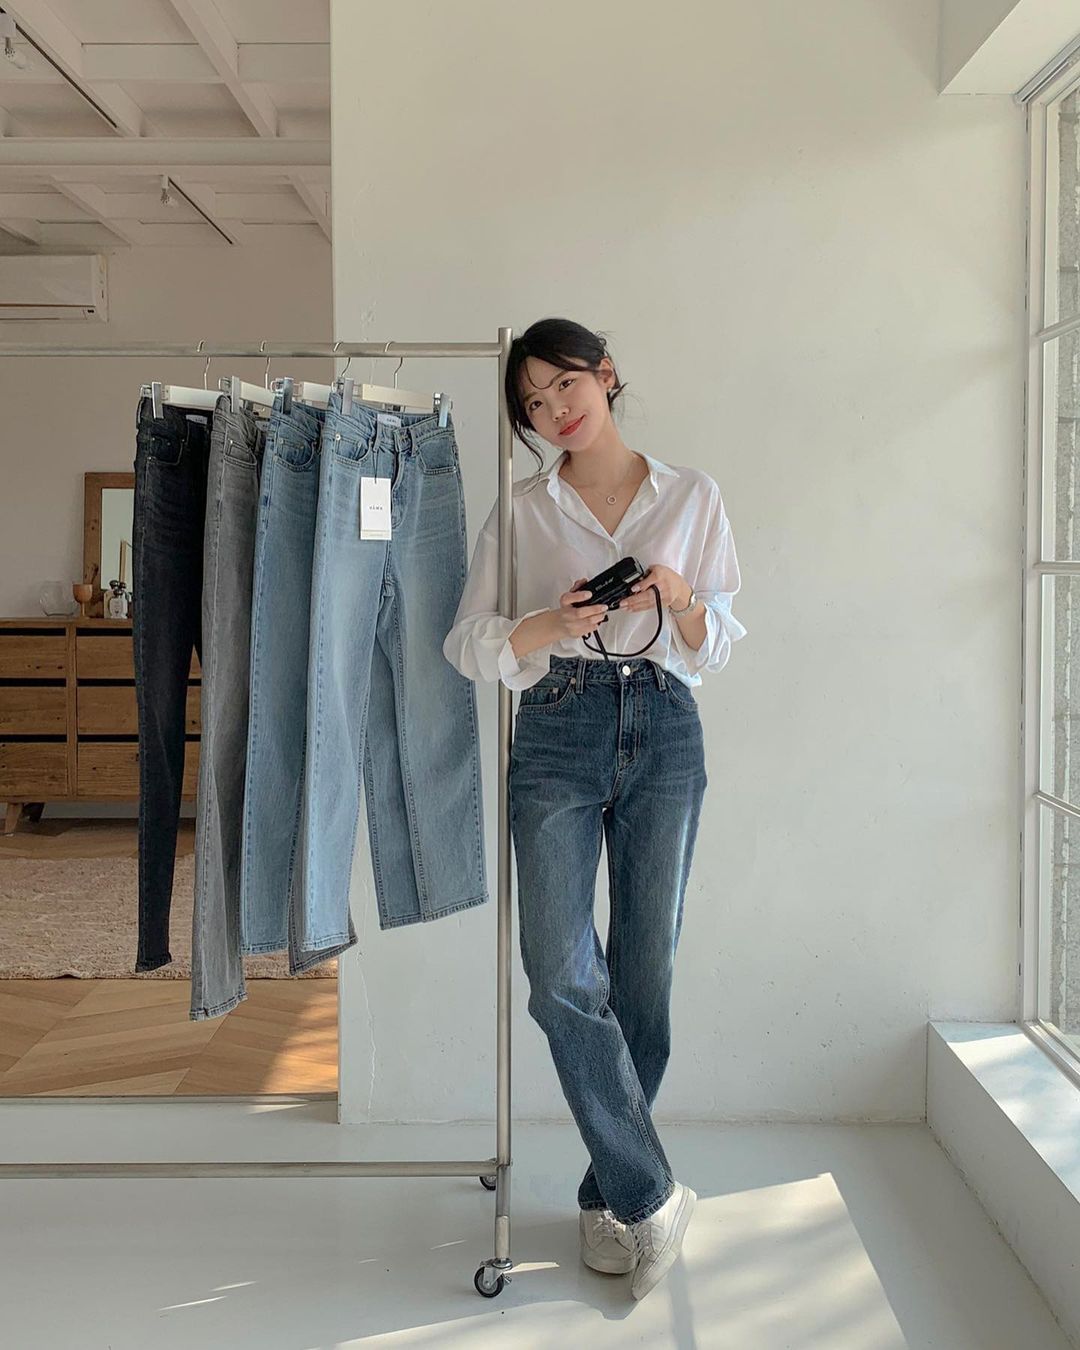 Học nàng blogger Hàn cách diện jeans “đỉnh của chóp”: Vừa hack dáng vừa thanh lịch để diện đến sở làm - Ảnh 4.